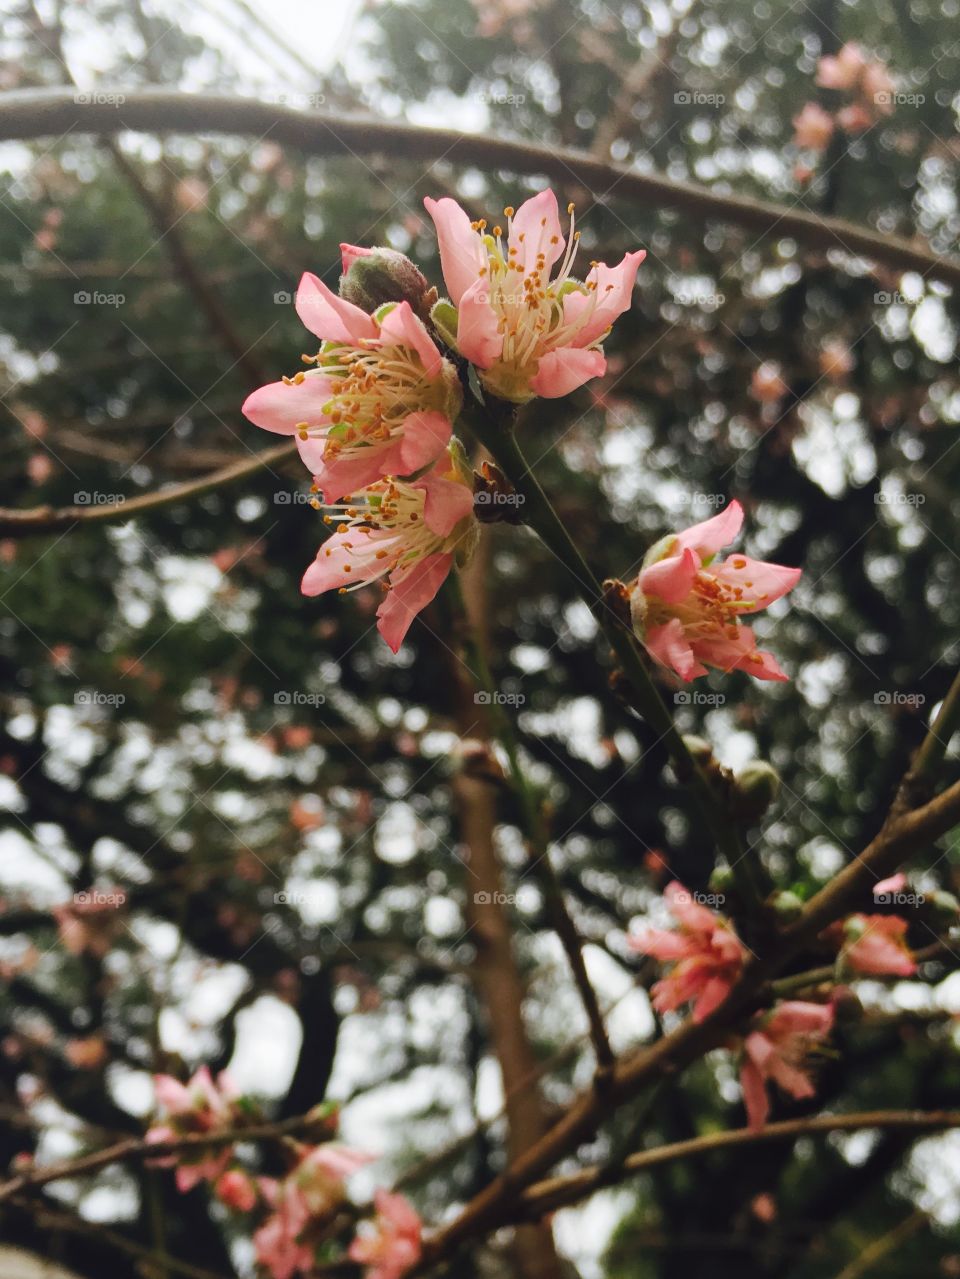 Peach blossom-spring has sprung